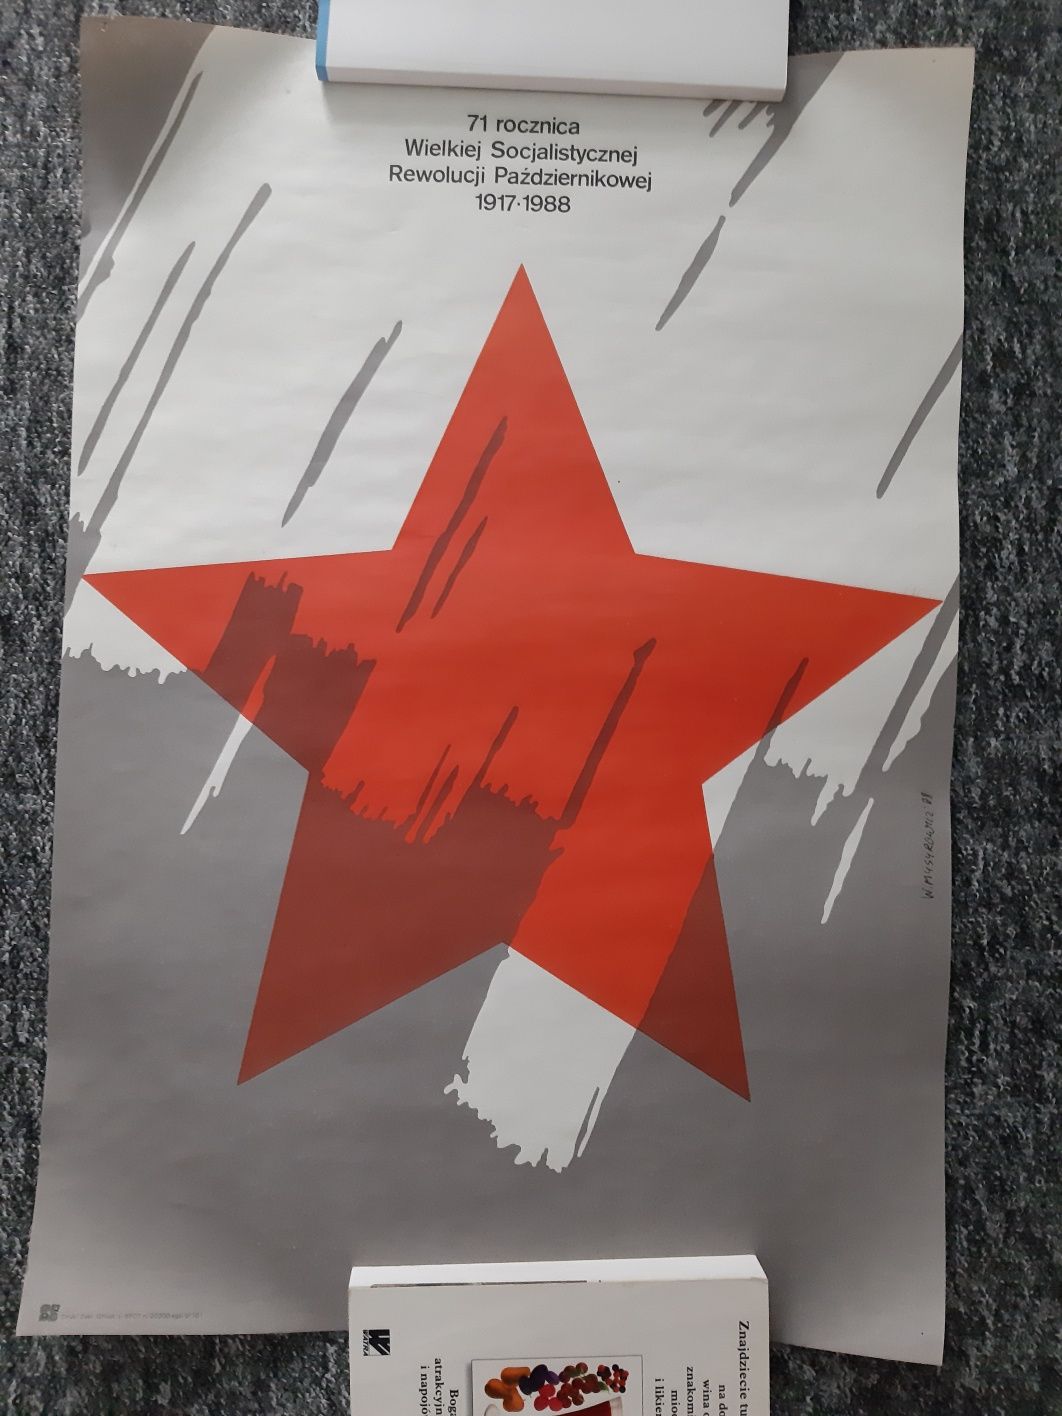 Plakat 71 Rocznica Wielkiej Socjalistycznej Rewolucji Październikowej